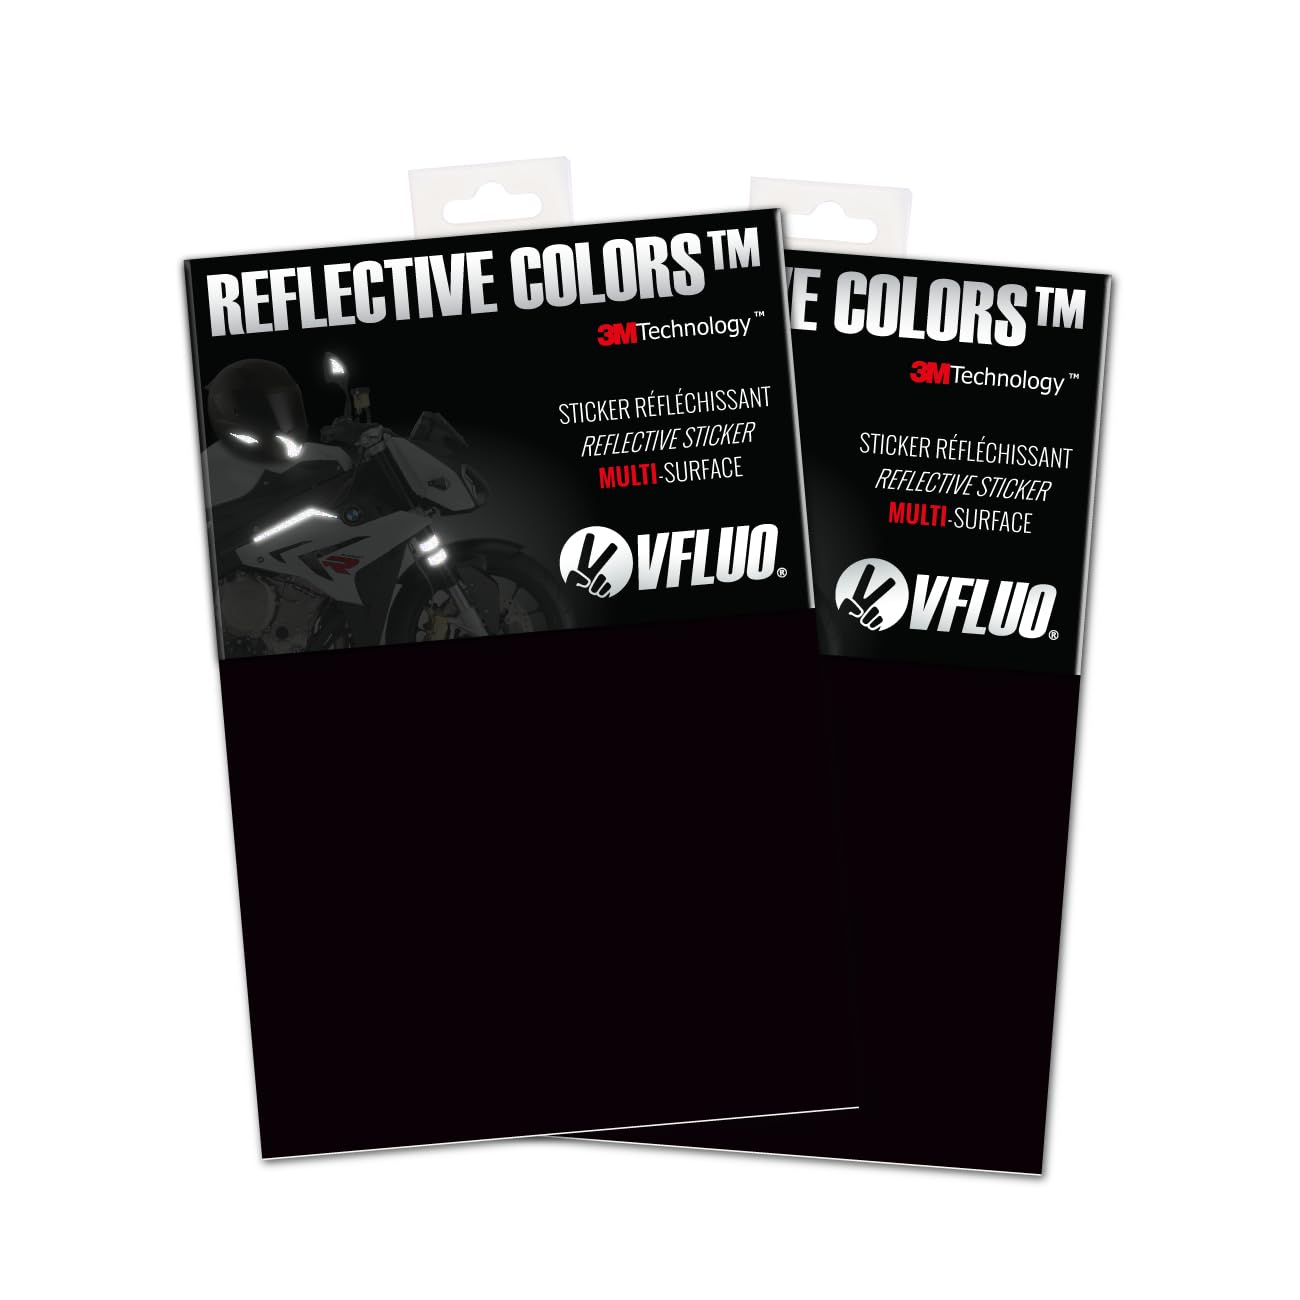 VFLUO 3M Reflective Colors, (2er-Pack) Zuschneidbare retroreflektierende Folien für Motorrad-, Roller-, Fahrrad- und Mehrzweckhelme, 3M Technology, 10 x 15 cm, Noir von VFLUO